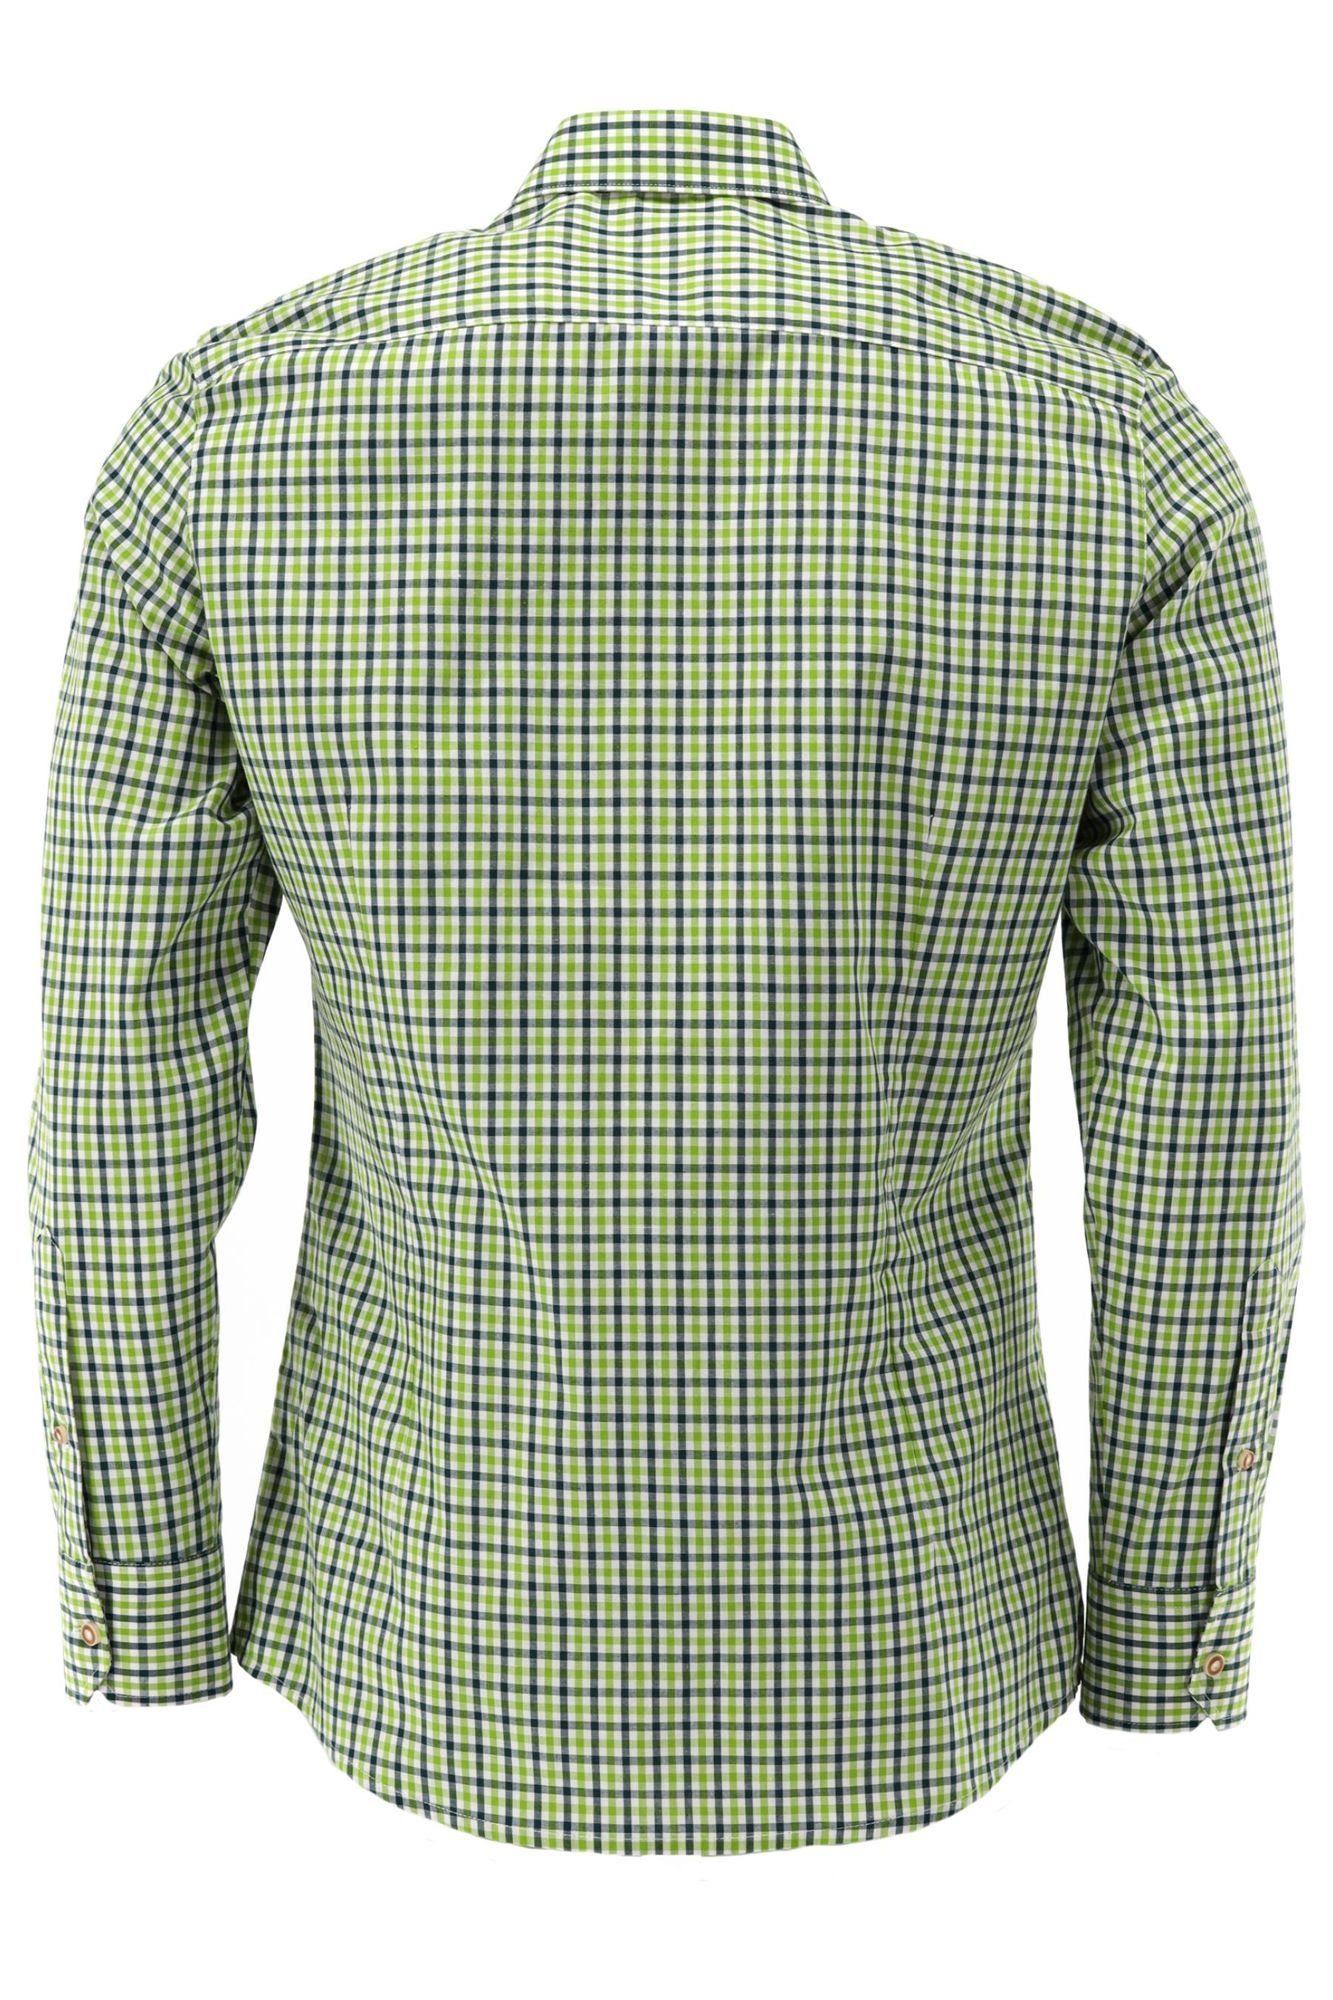 Jagdhemd Outdoorhemd der Brusttasche OS-Trachten giftgrün mit auf Langarm Hirsch-Stickerei Tupopa